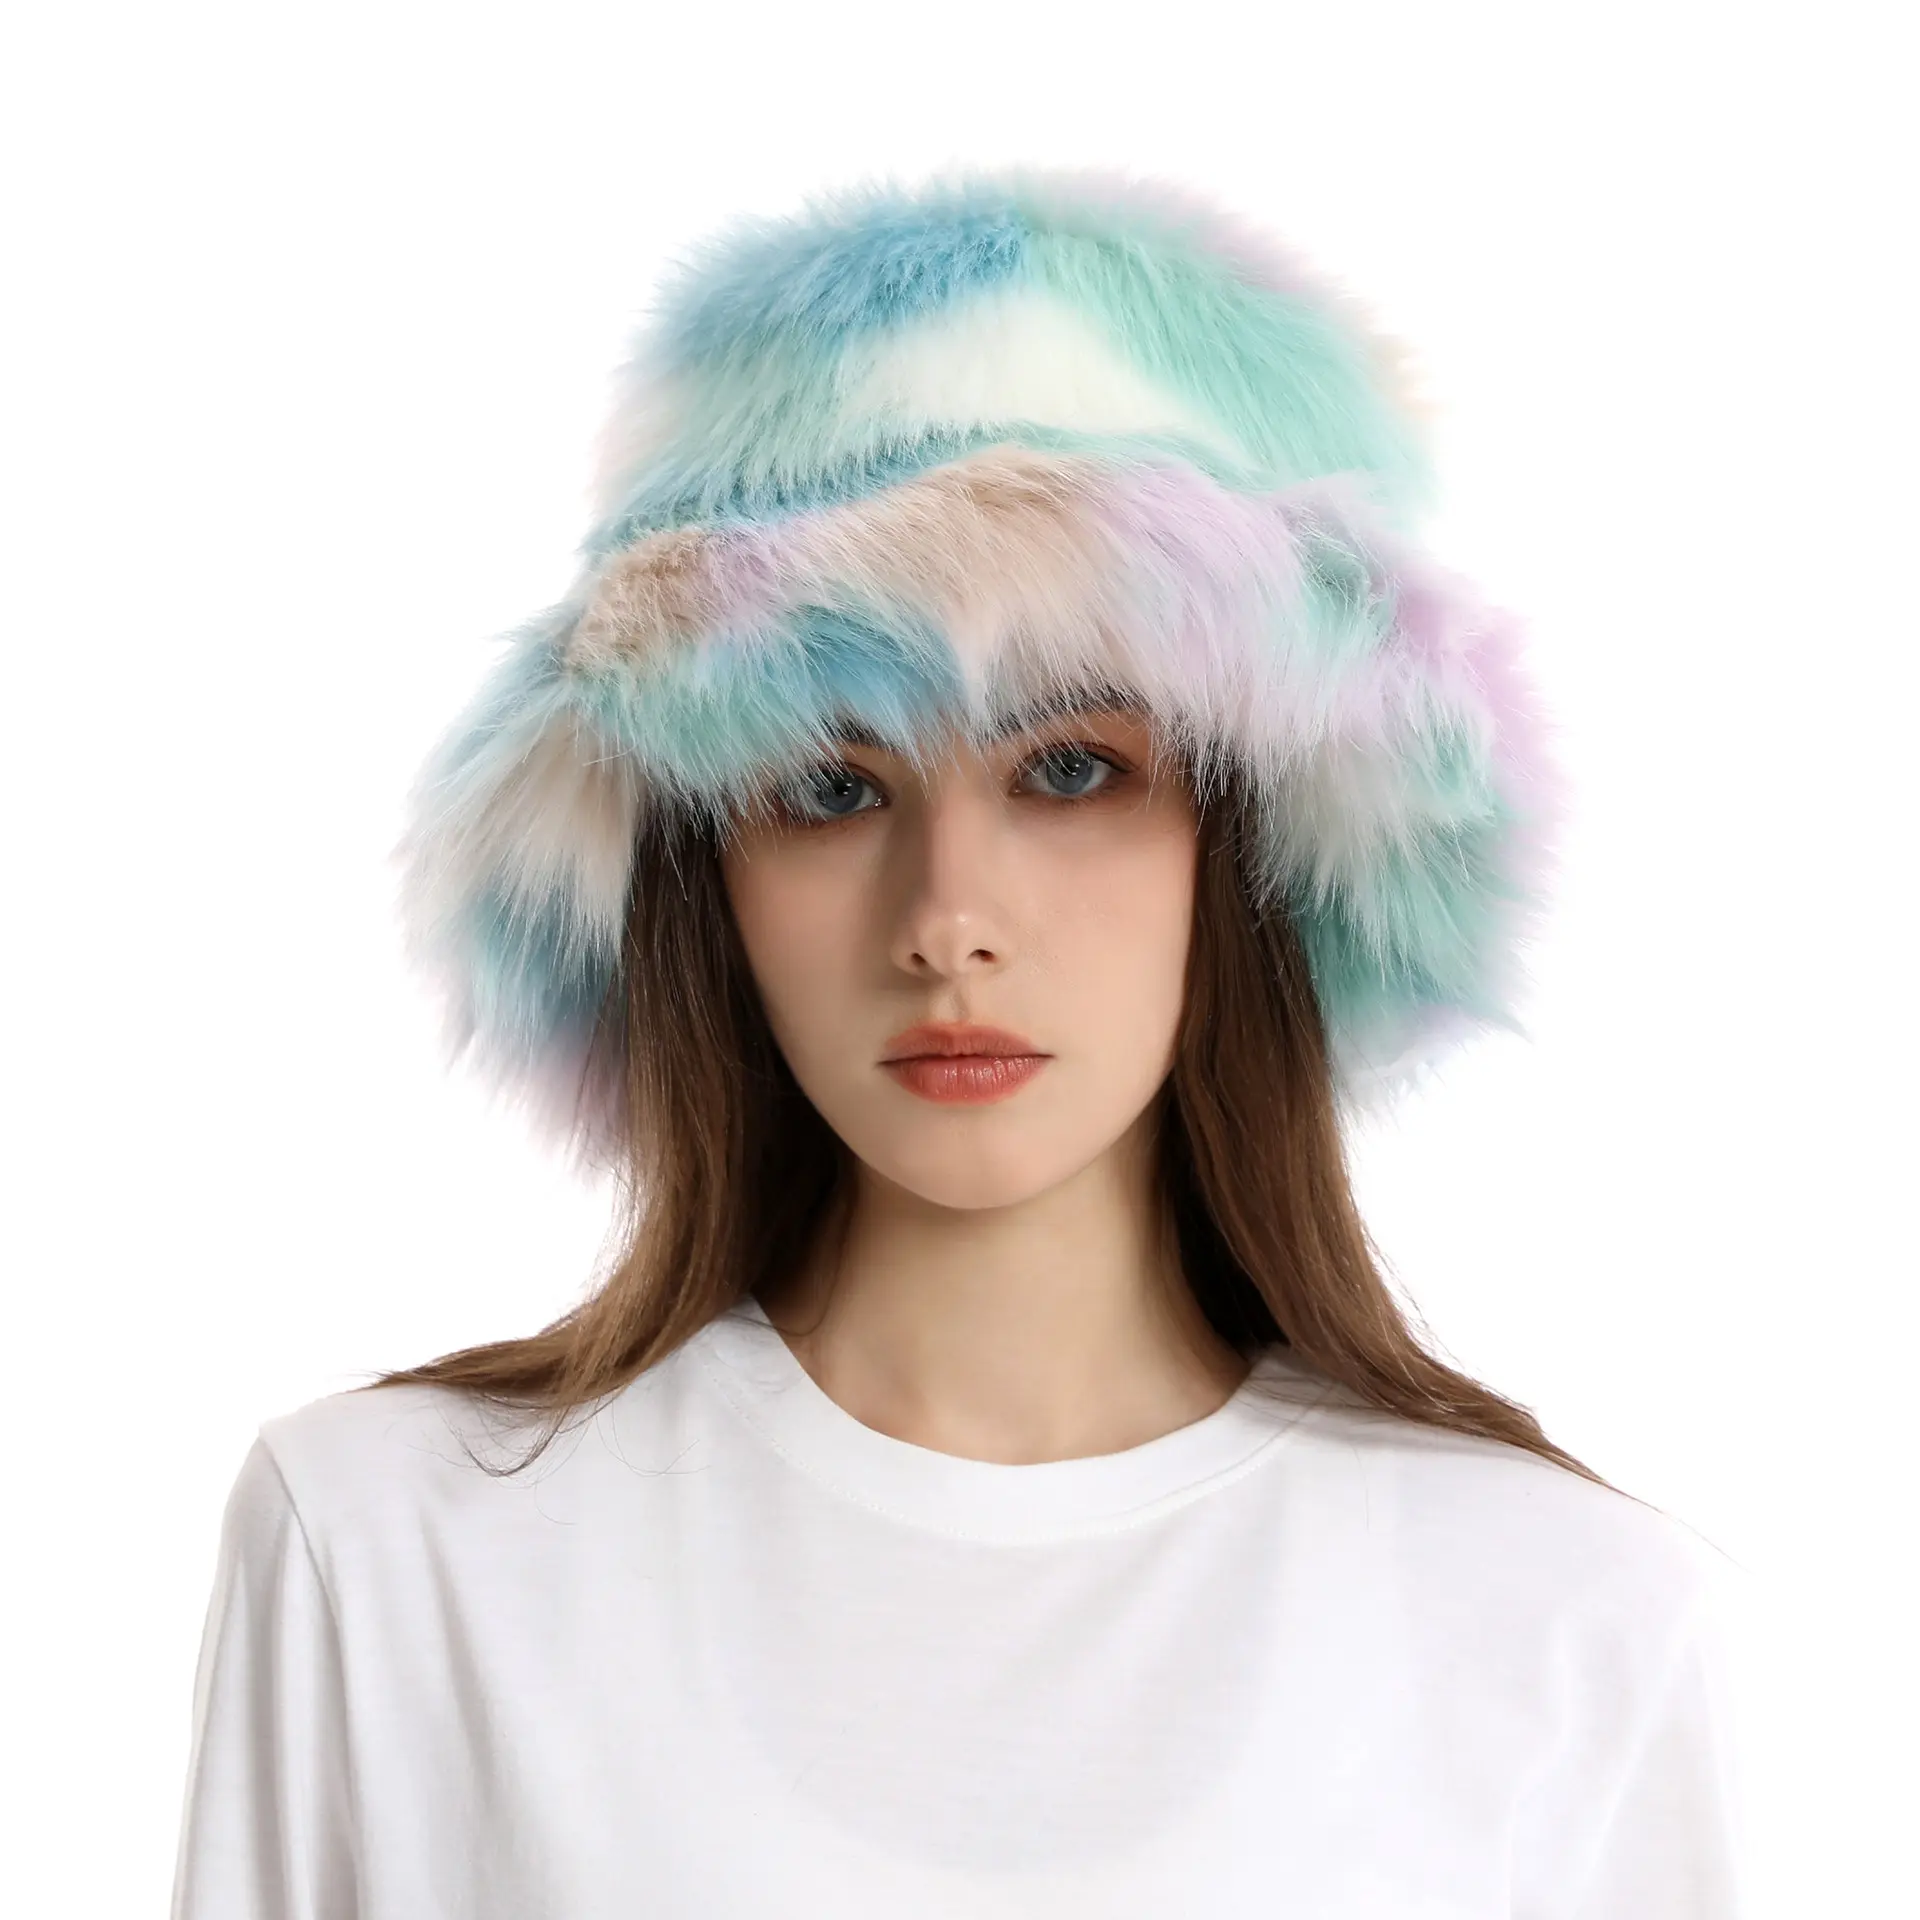 सर्दियों की महिलाओं ने गर्म इंद्रधनुष टोपी लोमड़ी के फर बेसिन महिला फैशन आकस्मिक पार्टी बाल्टी टोपी संगीत समारोह को रखा